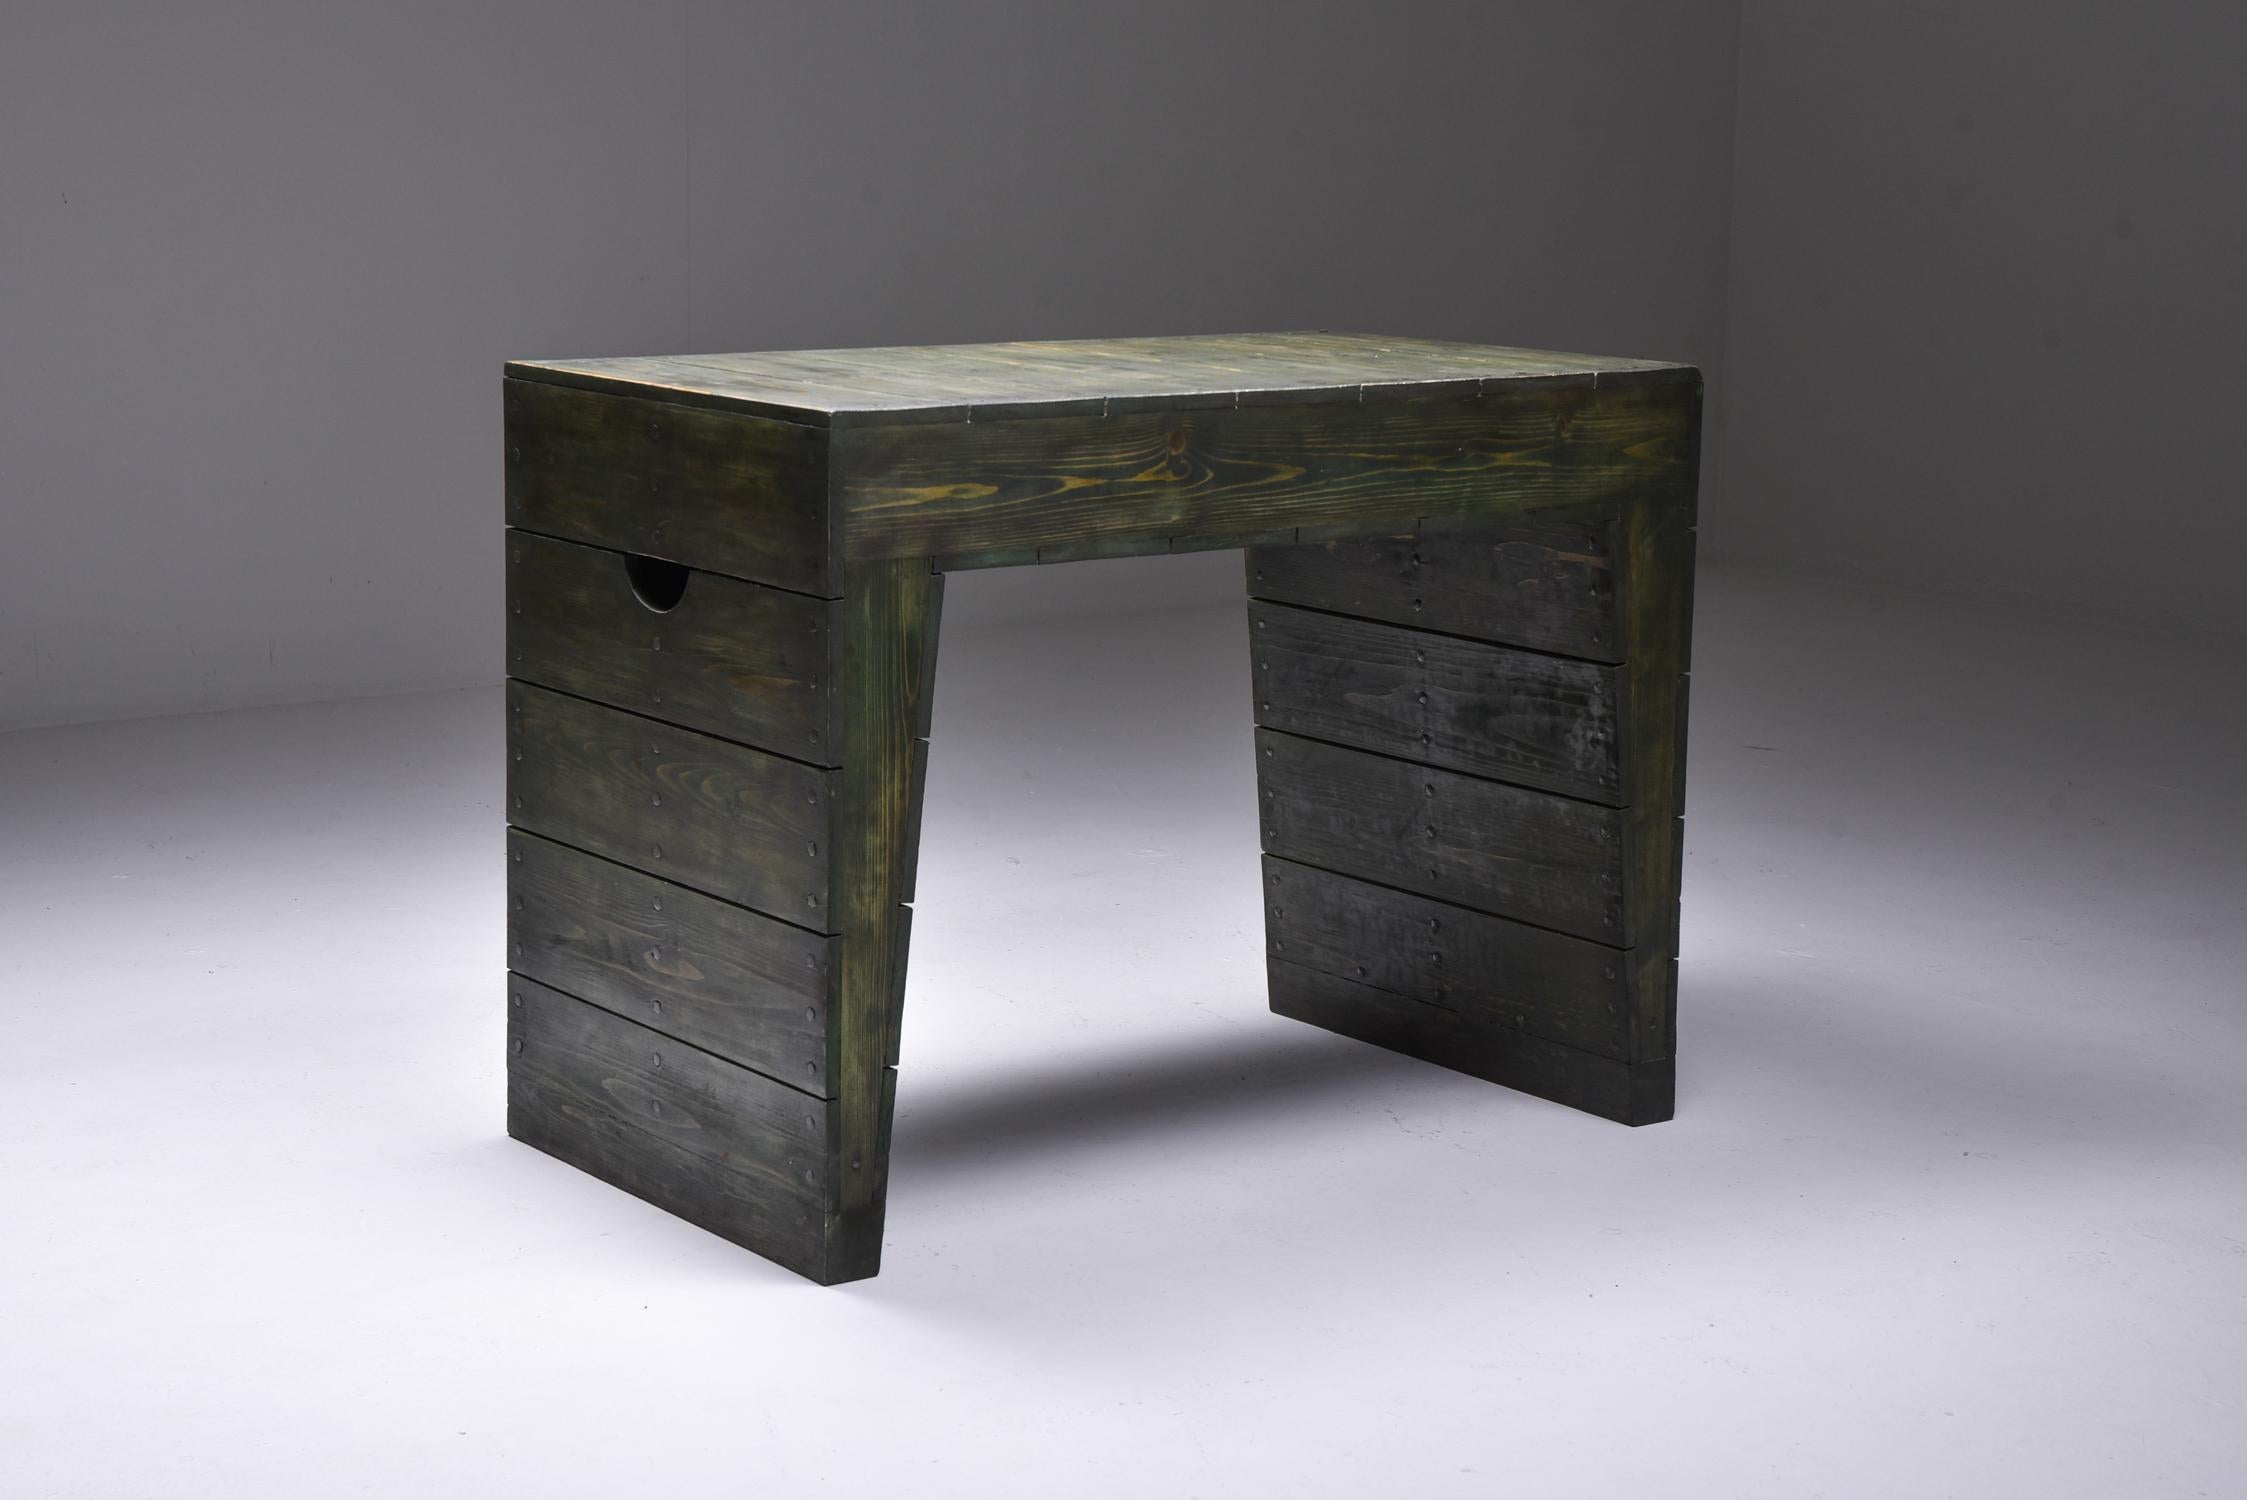 Minimalist Olive Green Table Desk by Dom Hans van der Laan & Jan de Jong